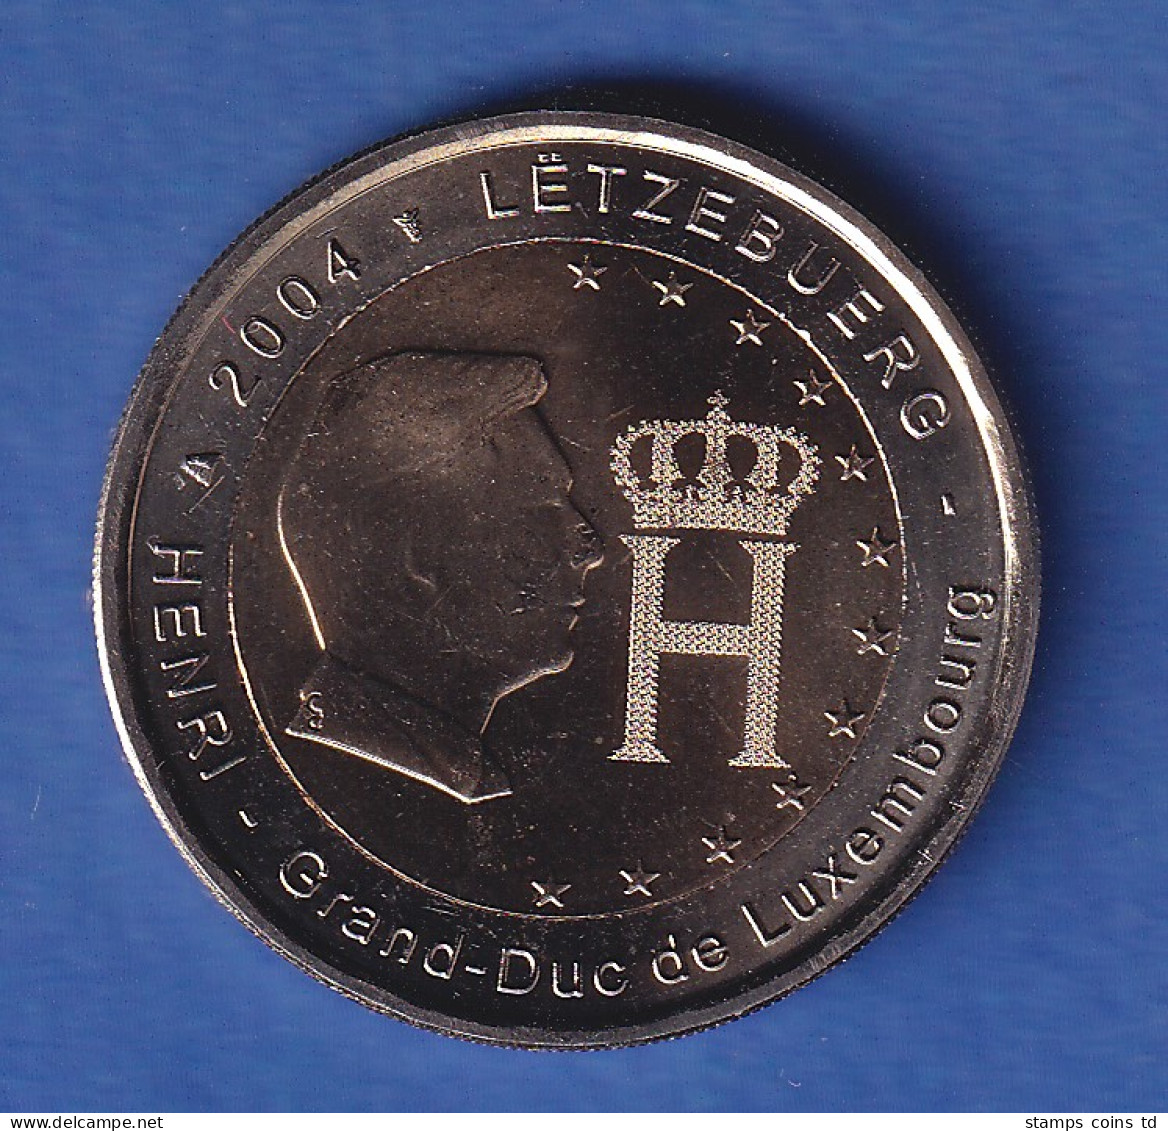 Luxemburg 2004 2-Euro-Sondermünze Henri Und Monogramm Bankfr. Unzirk. - Luxemburg